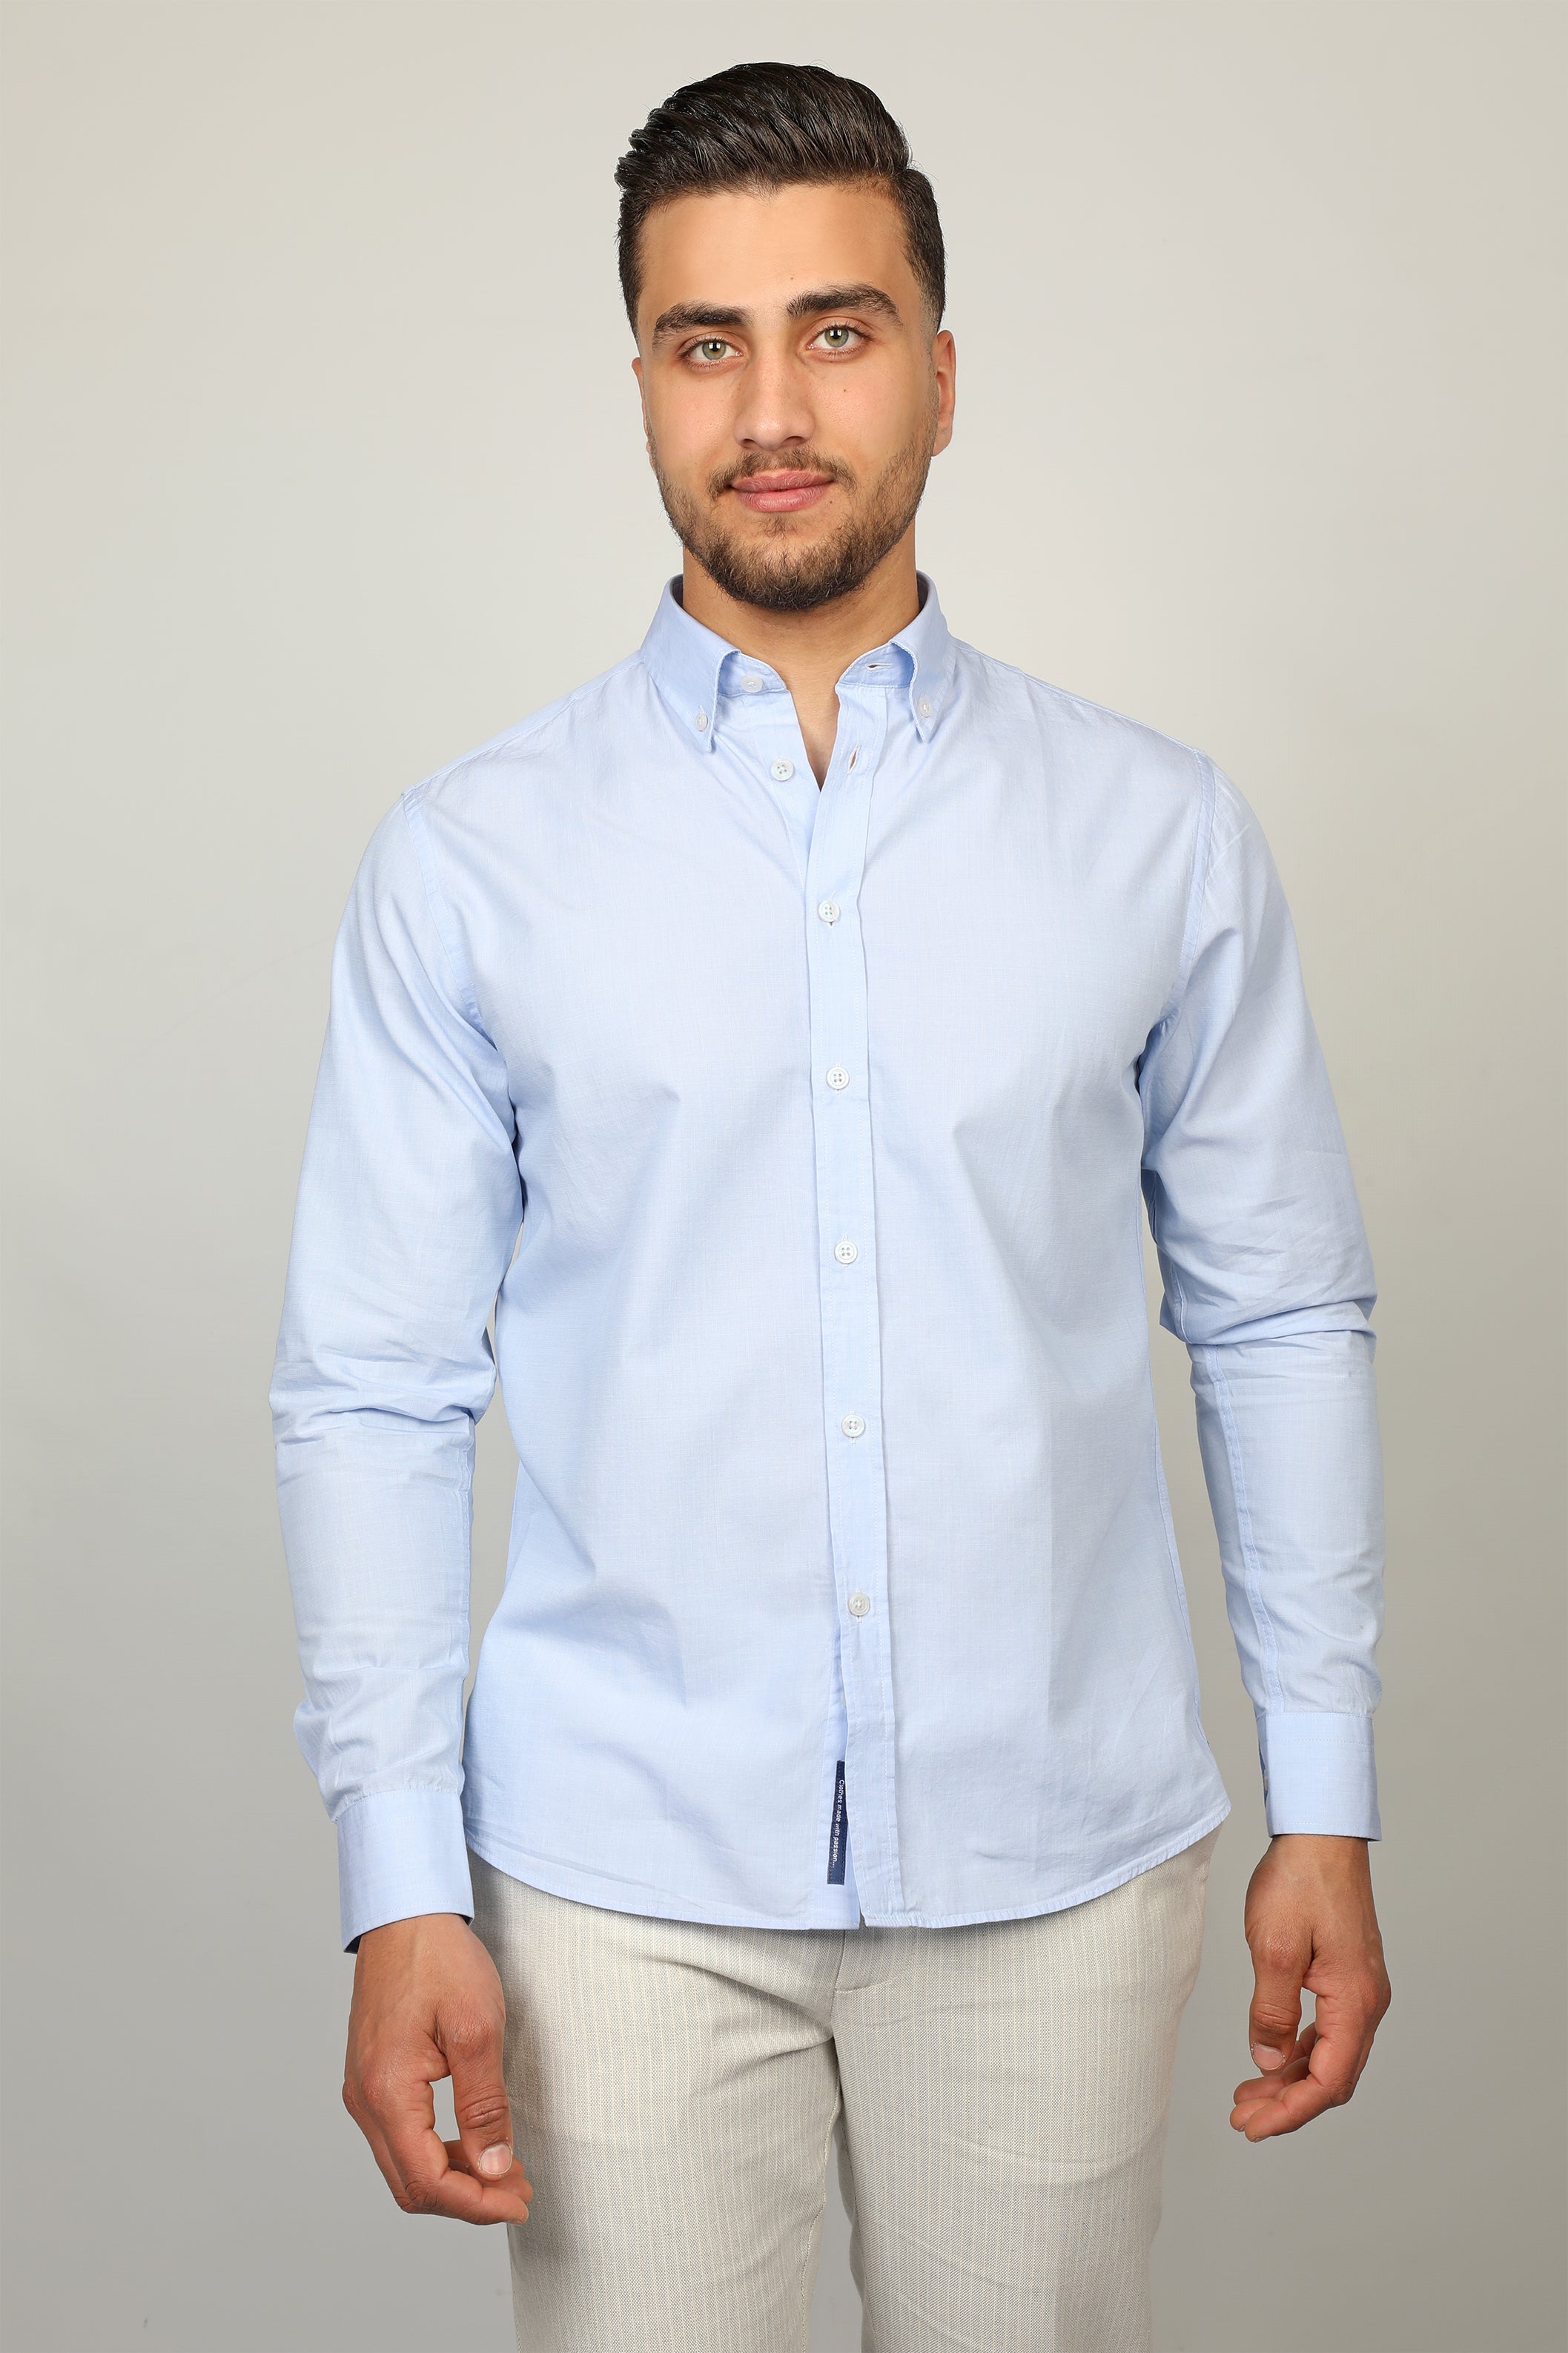 Blue Shirt Linen White Button